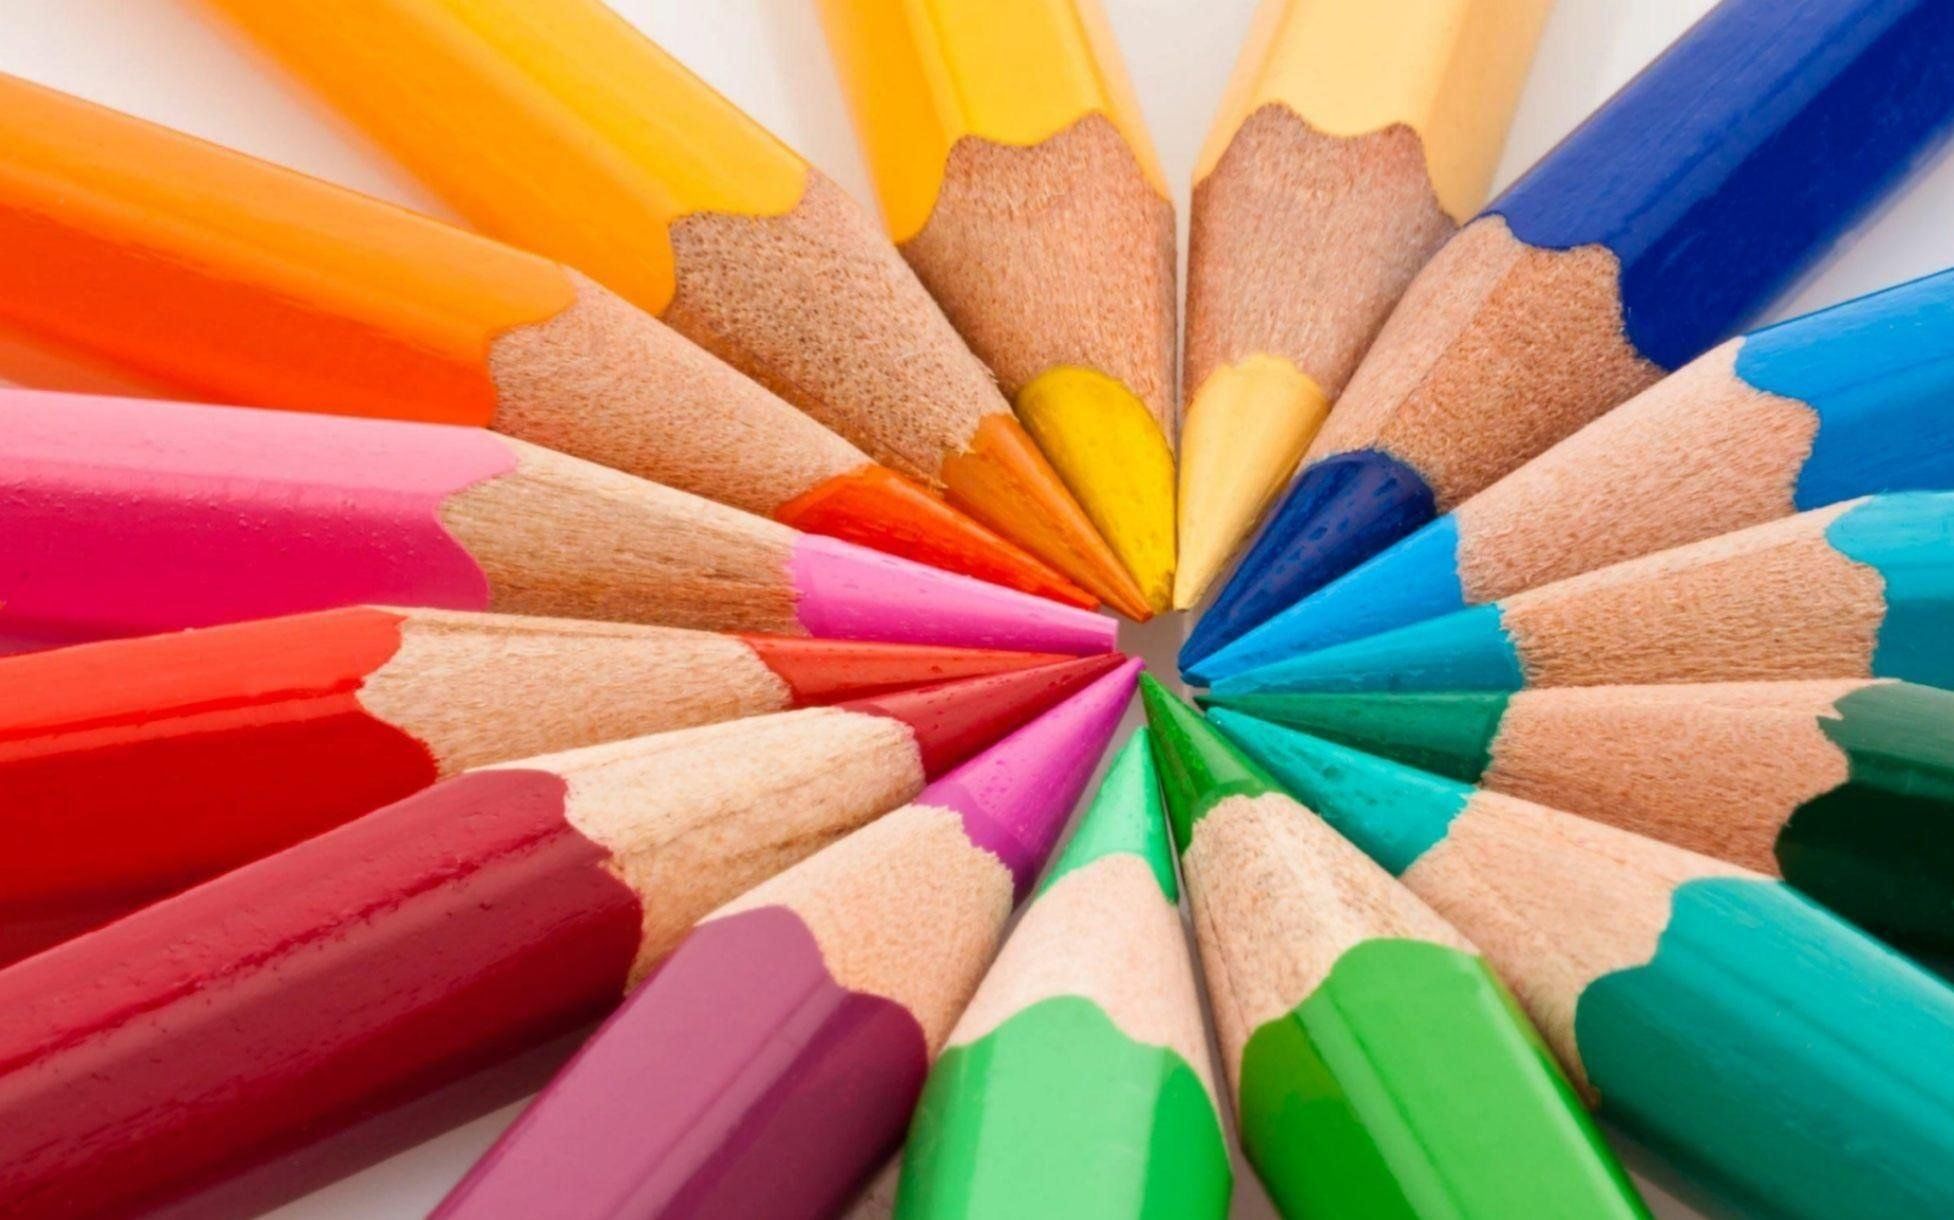 Фон карандаши цветные